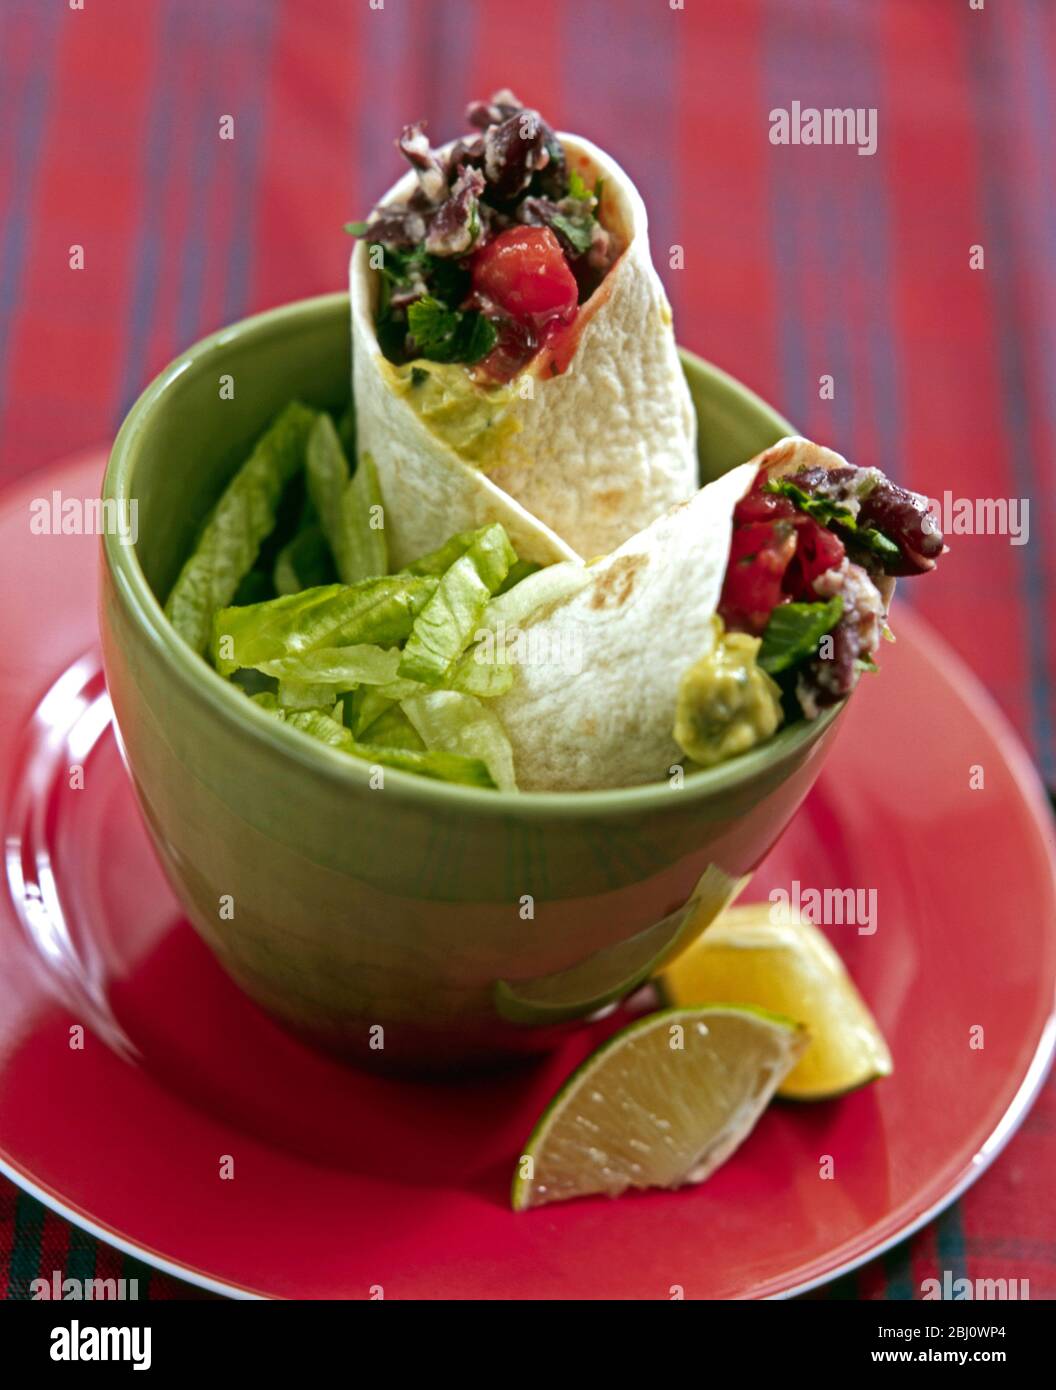 Almuerzo ligero de mezcla de judías verdes envueltas en tortillas suaves con ensalada y cuñas de limón en un tazón verde - Foto de stock